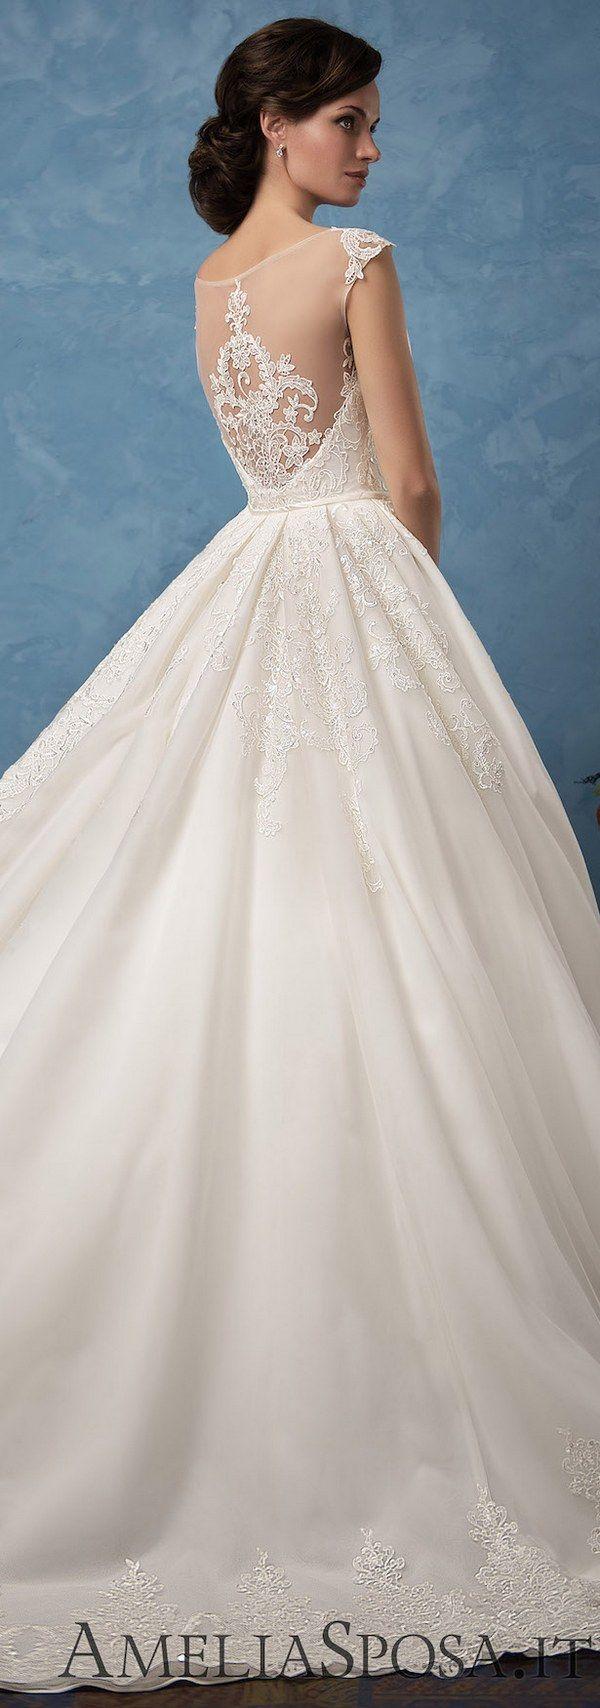 زفاف - Amelia Sposa 2017 Wedding Dresses